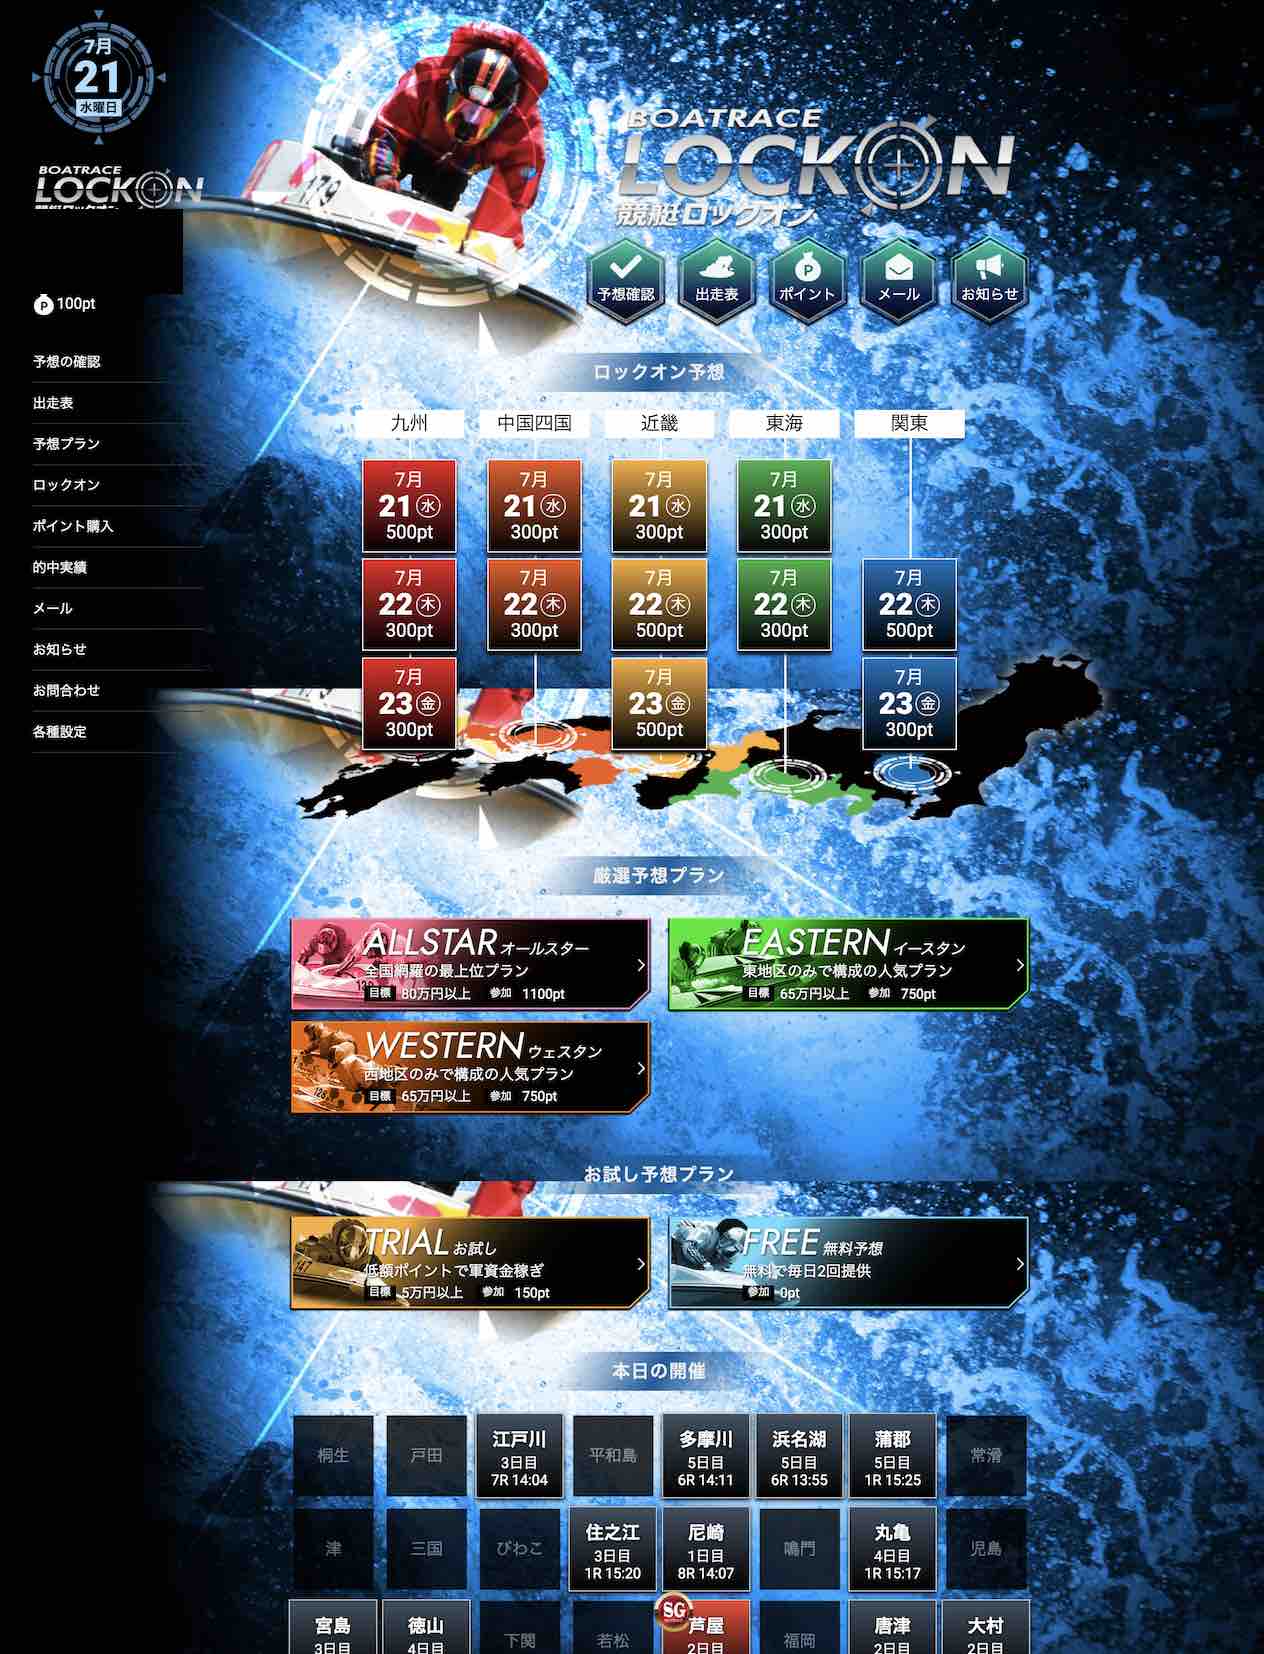 競艇ロックオンという競艇予想サイトの会員ページ